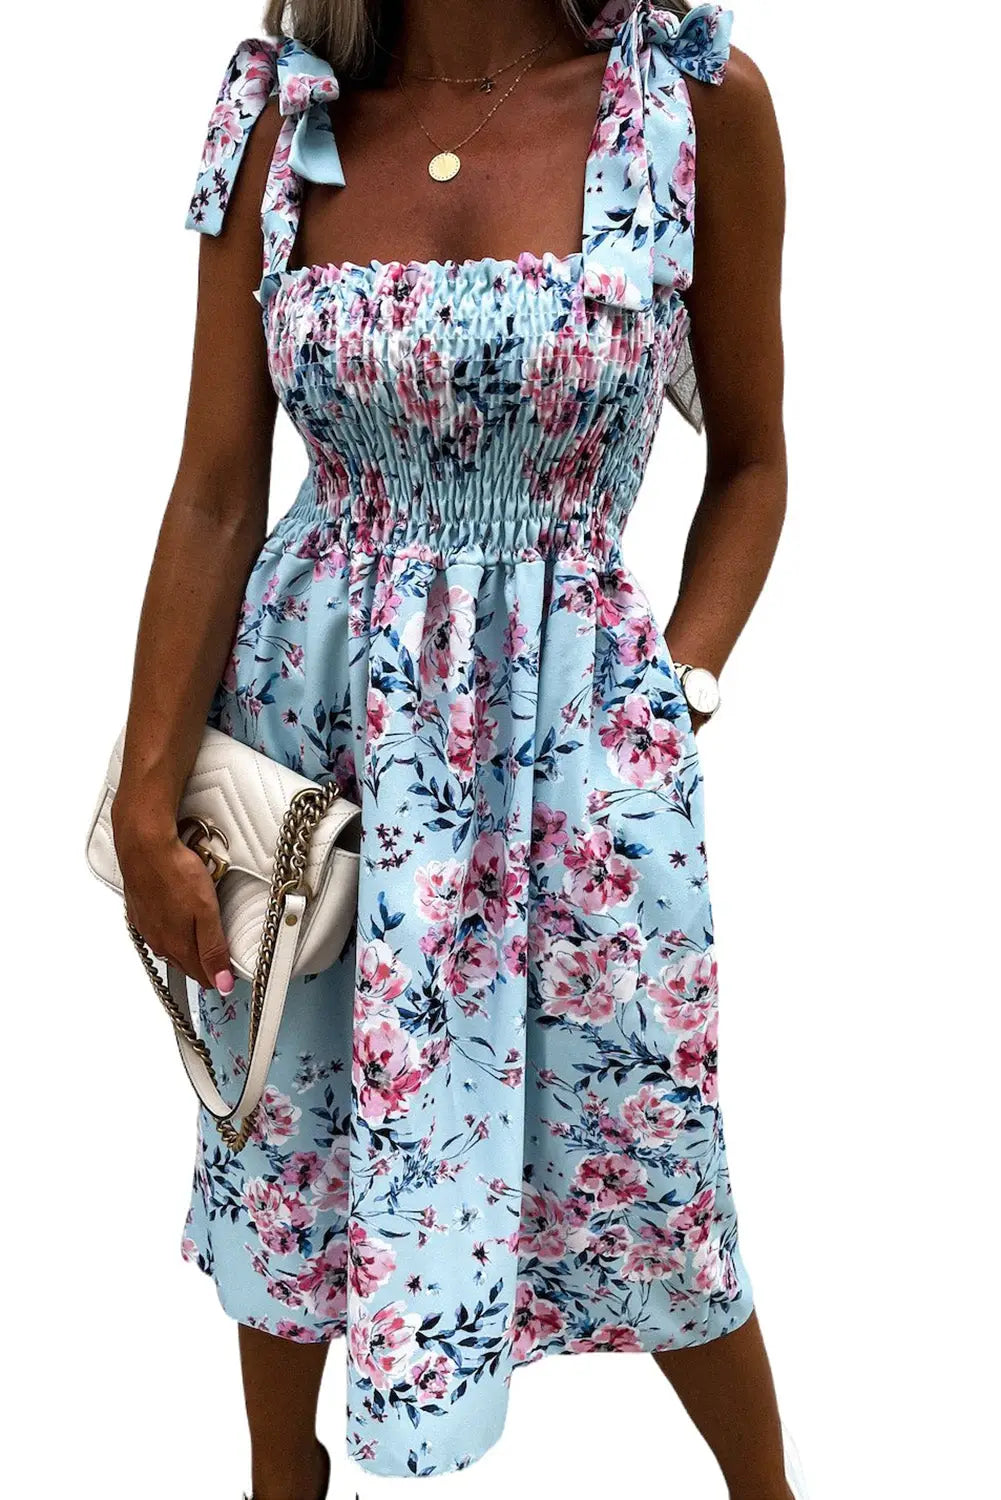 Sky blue tie straps smocked floral dress - dresses